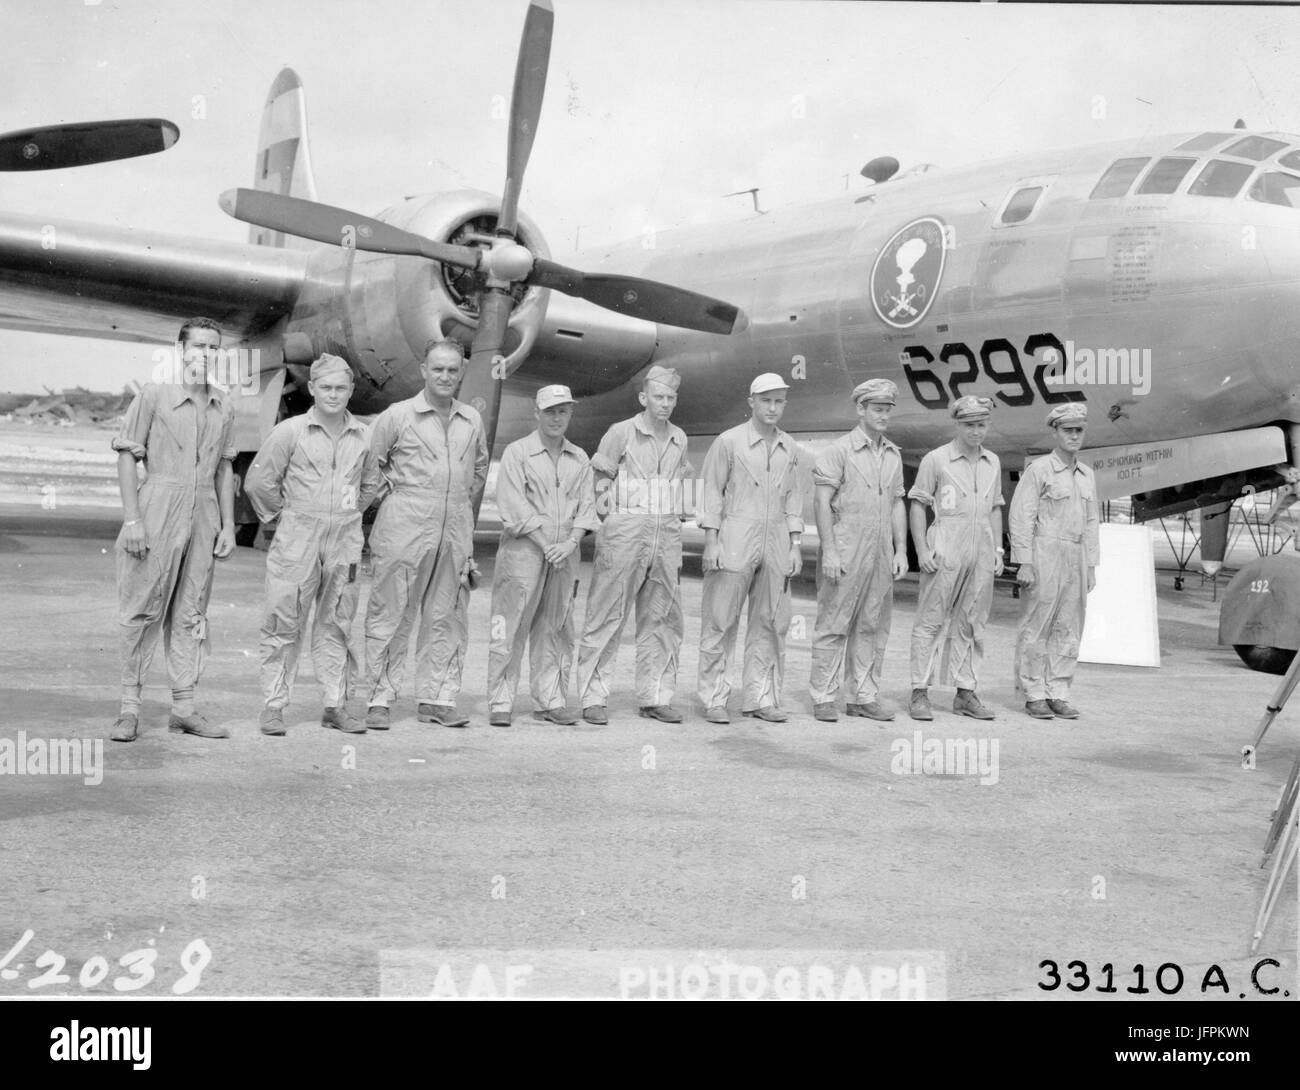 Equipaggio del Boeing B-29 "Enola Gay", il piano che è scesa la bomba atomica su Hiroshima. Da sinistra a destra sono: Sgt T.J. Healey; Sgt C.O. Wentzell; S/Sgt S.E. Osmond; M/sgt W.F. Orren; M/Sgt W. Duzenbury; Lt J. M. Anderson; Maj T. Ferrebee; Maj T. van Kirk; e col Paolo W. Tibbets. Kwajalein, 13 giugno 1946. Foto Stock